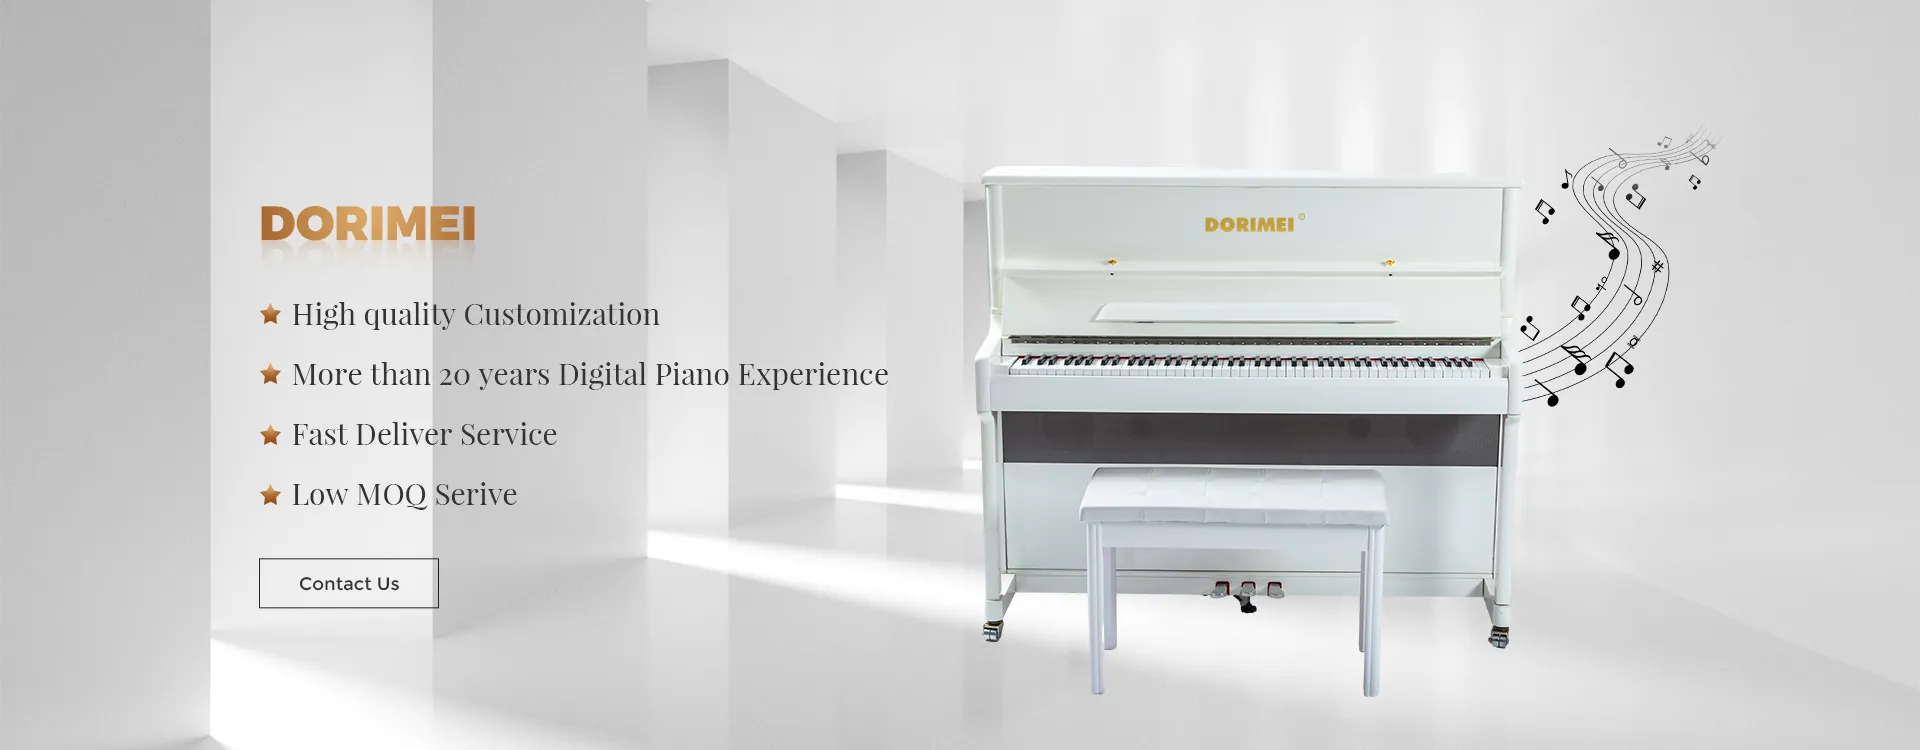 La Chine usine du clavier de piano numérique portable - Chine